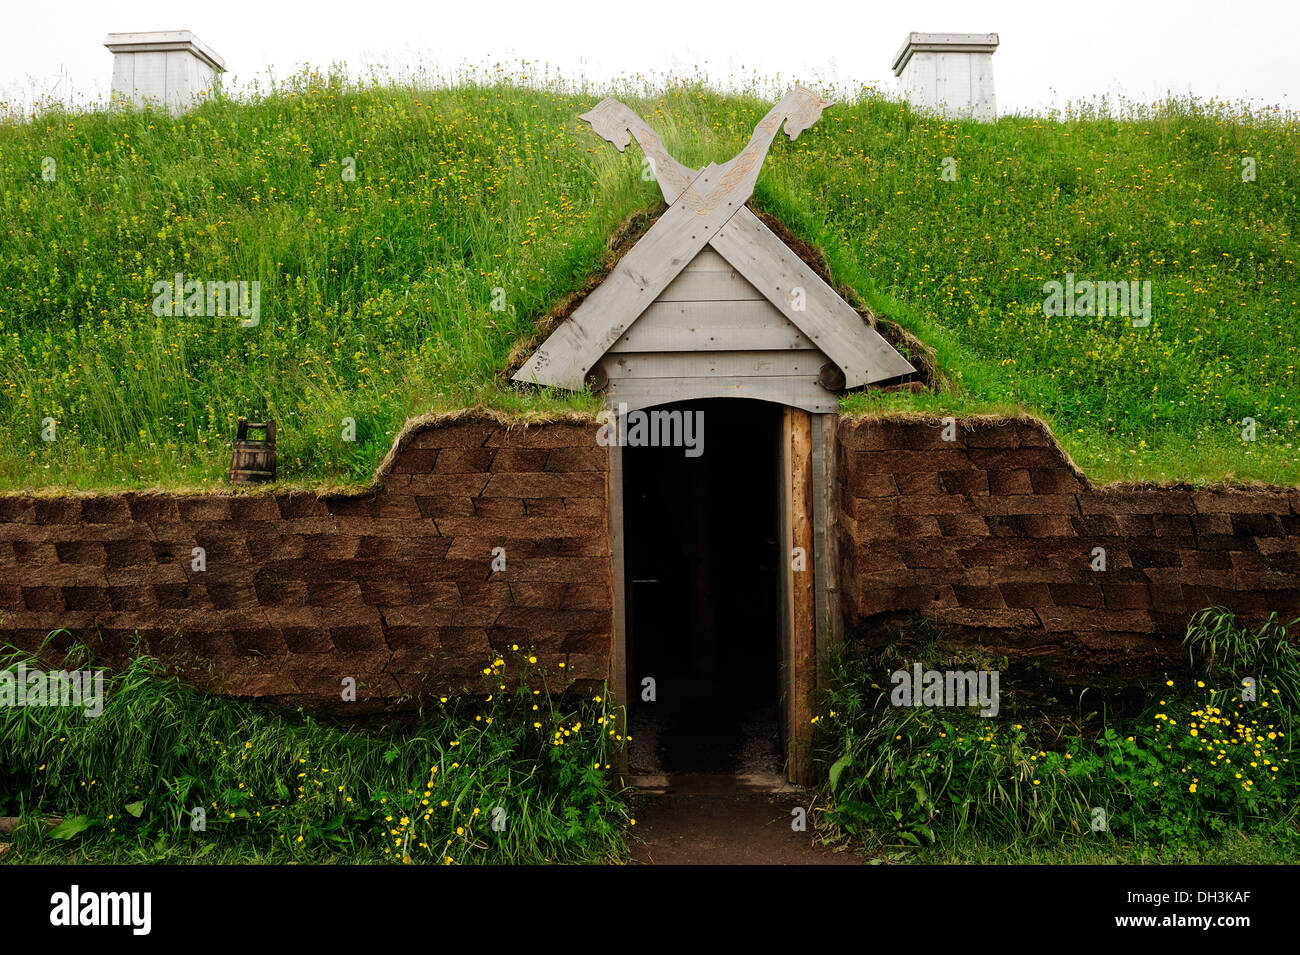 Primer asentamiento vikingo en el continente americano, alrededor de 1000 años, L'Anse aux Meadows, Terranova, Canadá, Norteamérica Foto de stock